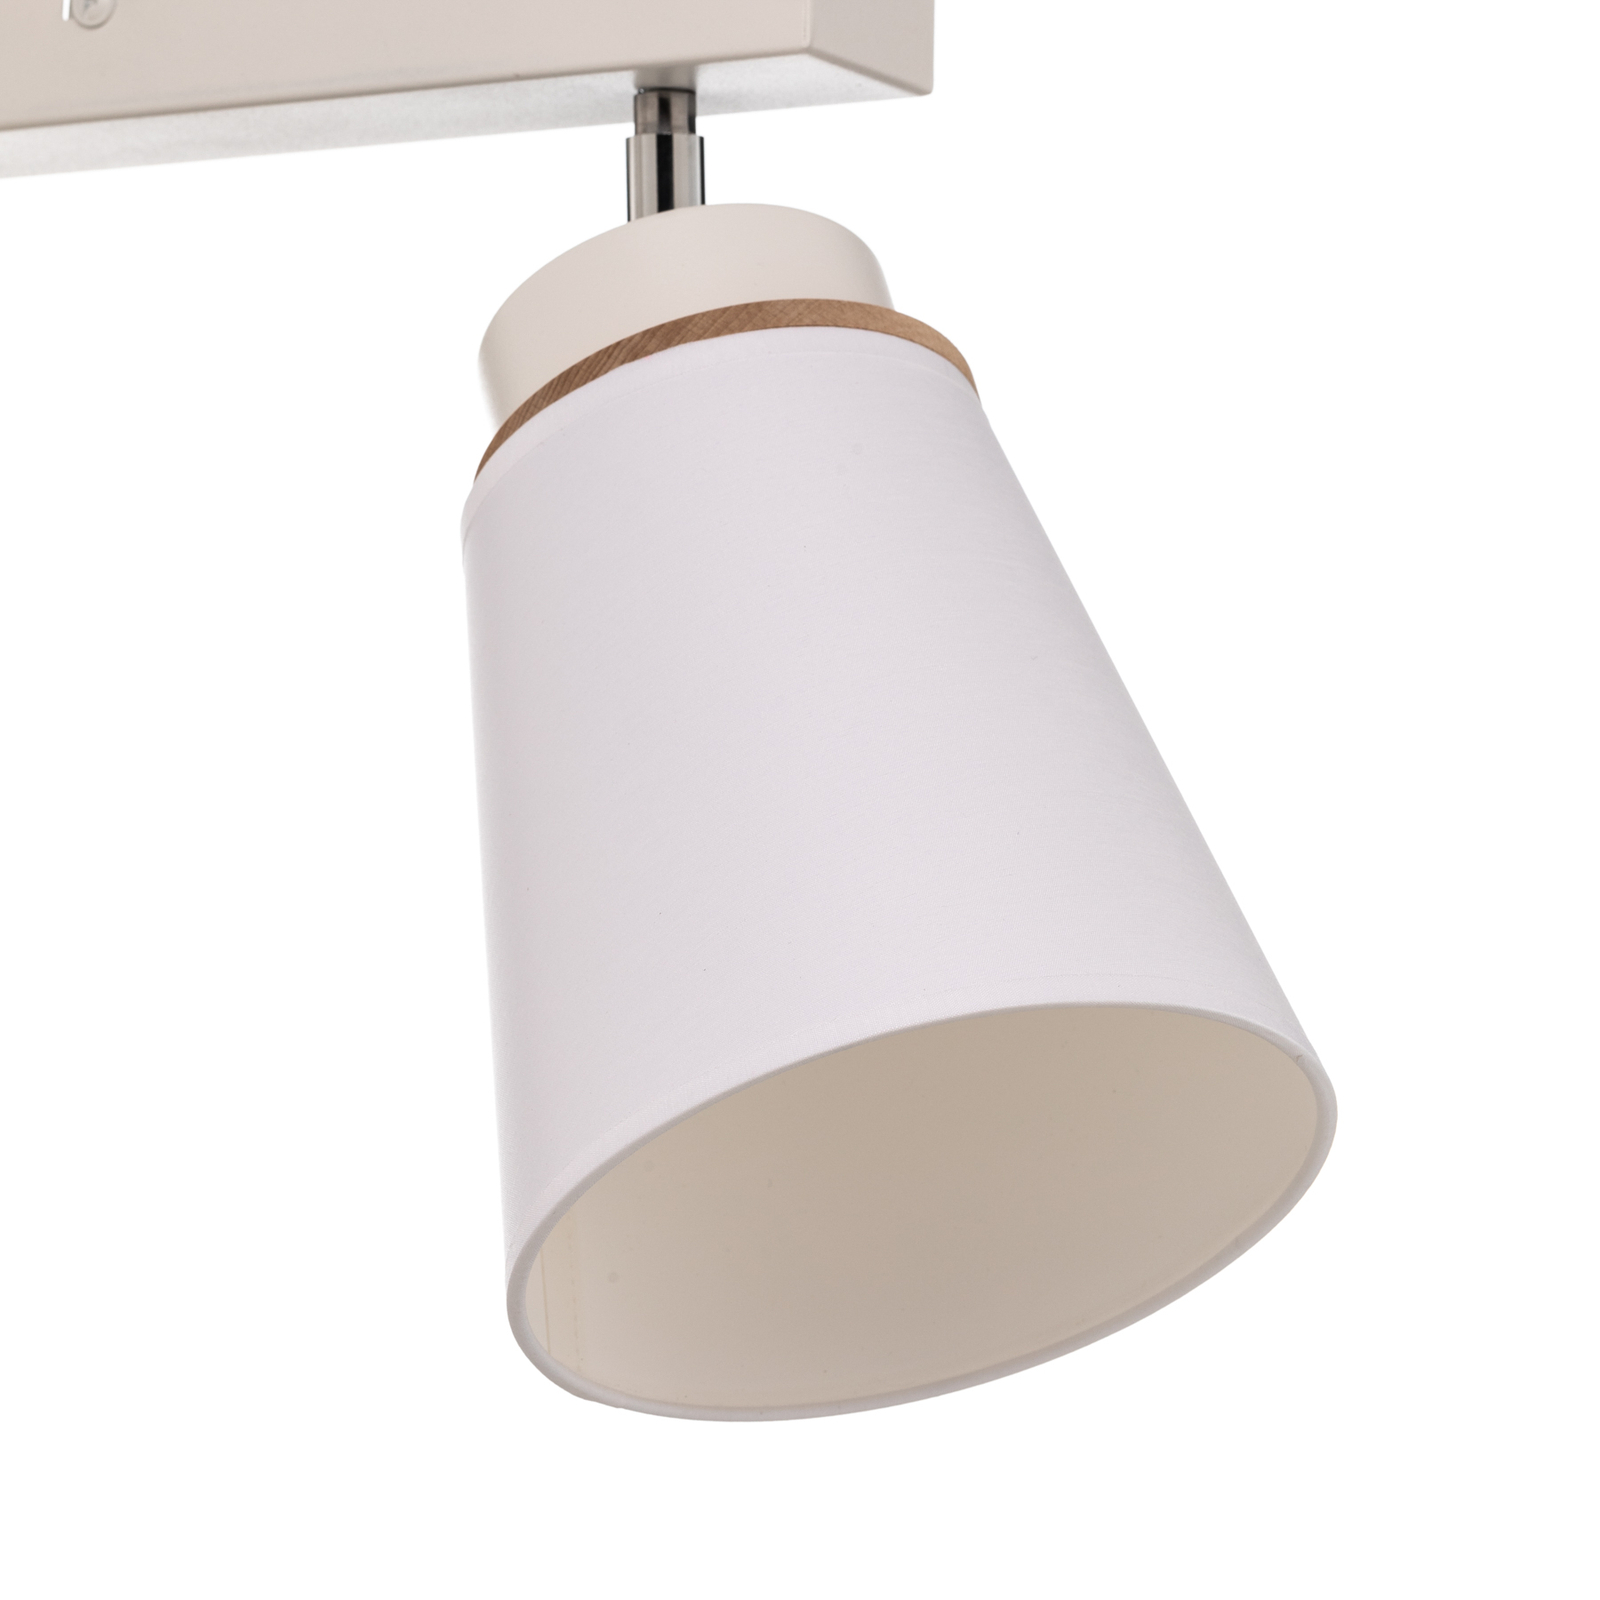 Ceiling spotlight Lore, 2-bulb